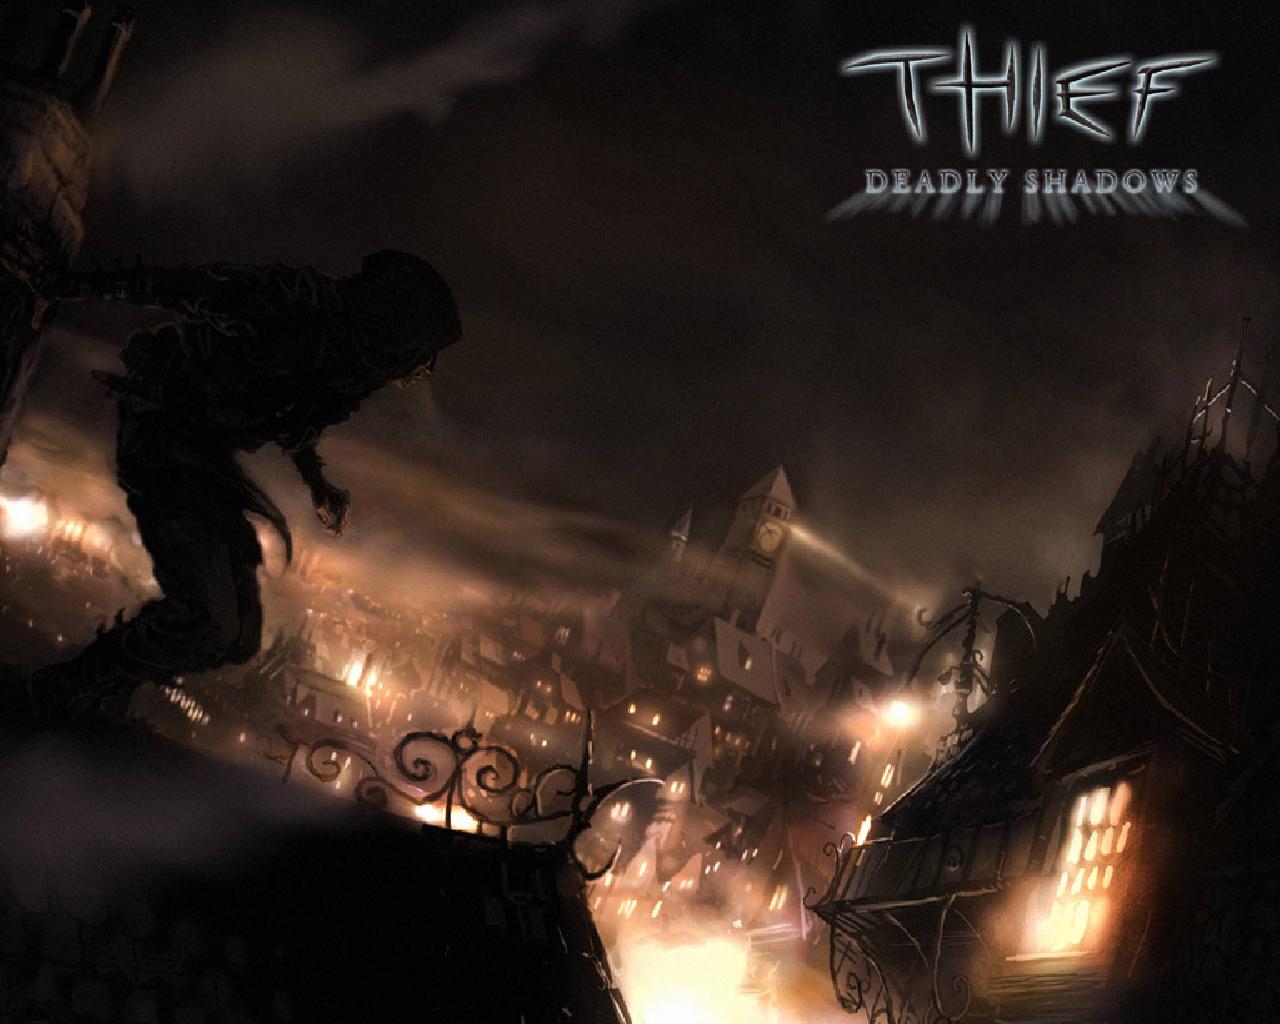 Thief_Deadly_Shadows_01_1280x1024.jpg